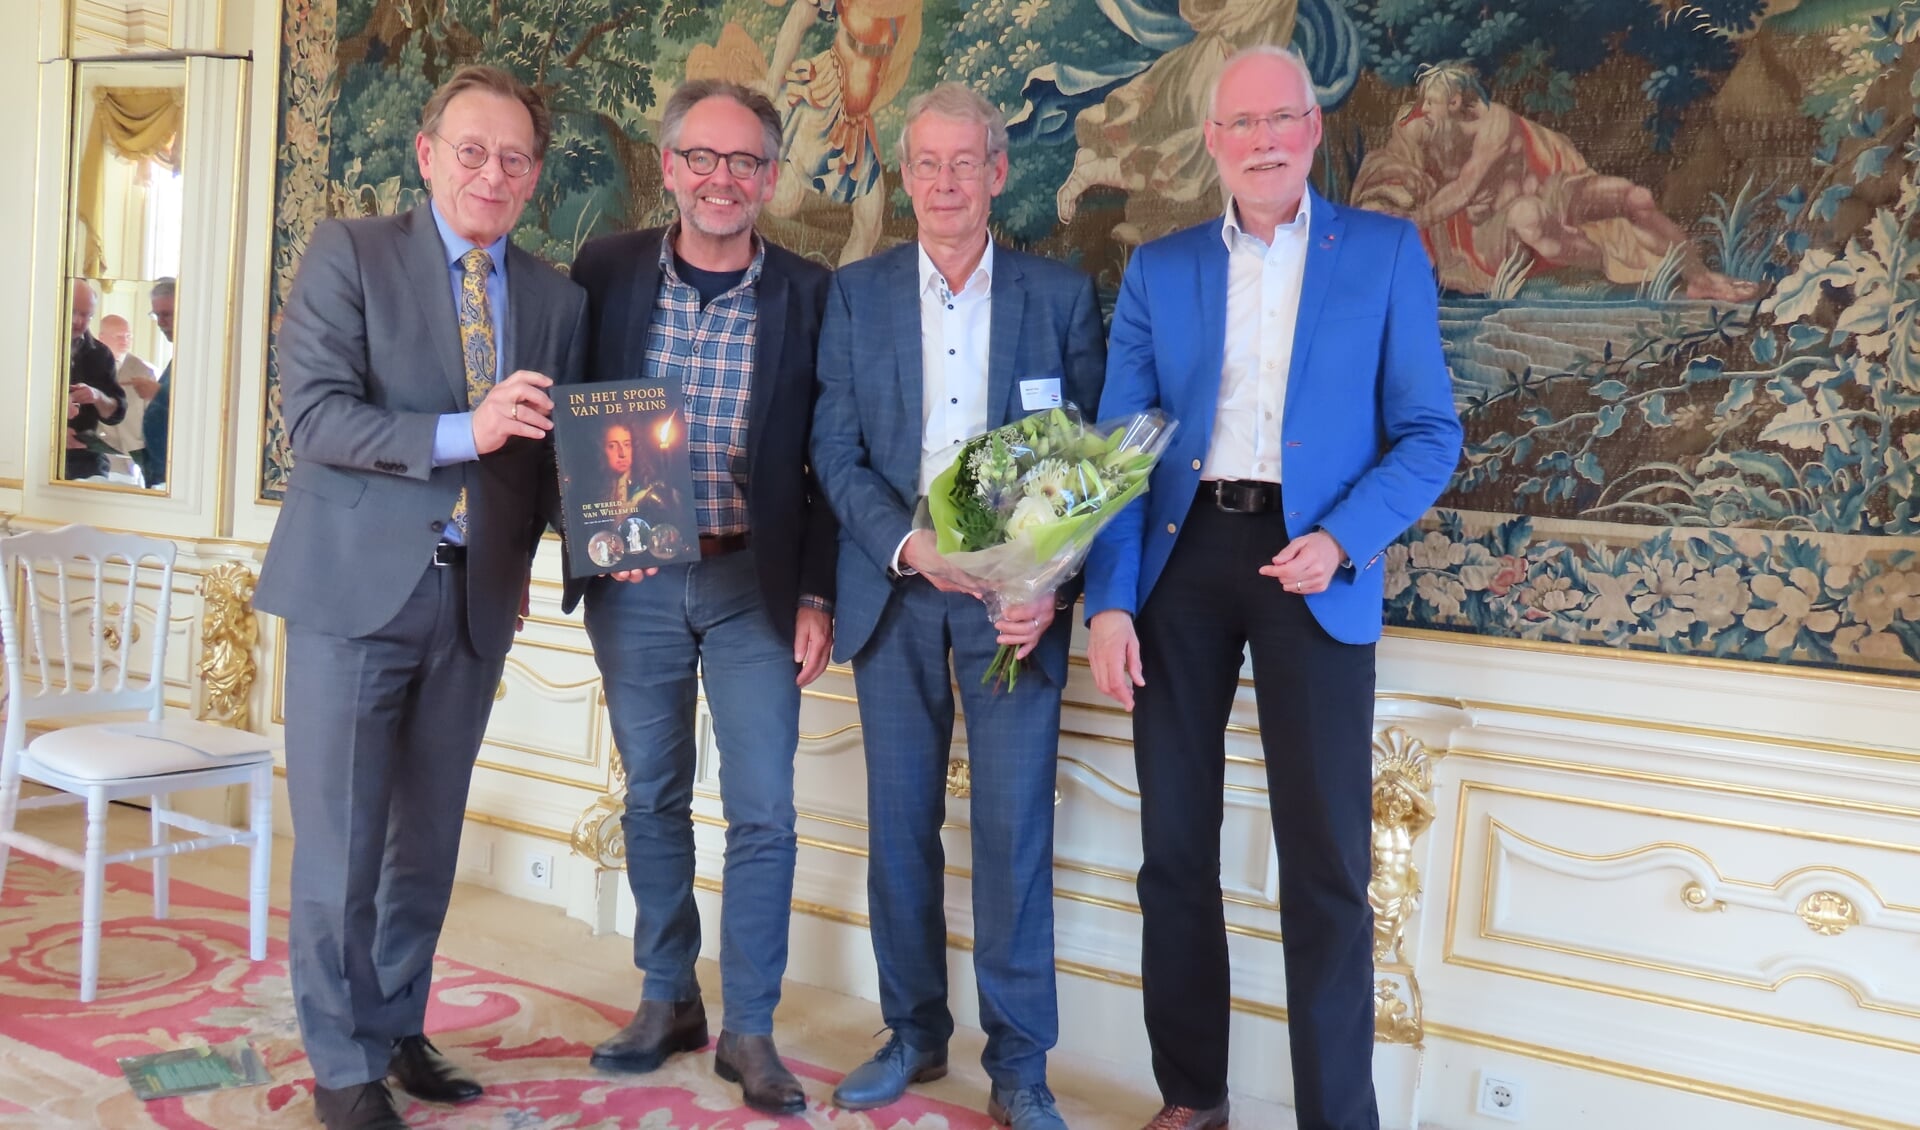 • Presentatie van het boek in Zeist, met burgemeester Koos Janssen, vormgever Nieck Engelhard en de auteurs Bernt Feis en Jan van Es.